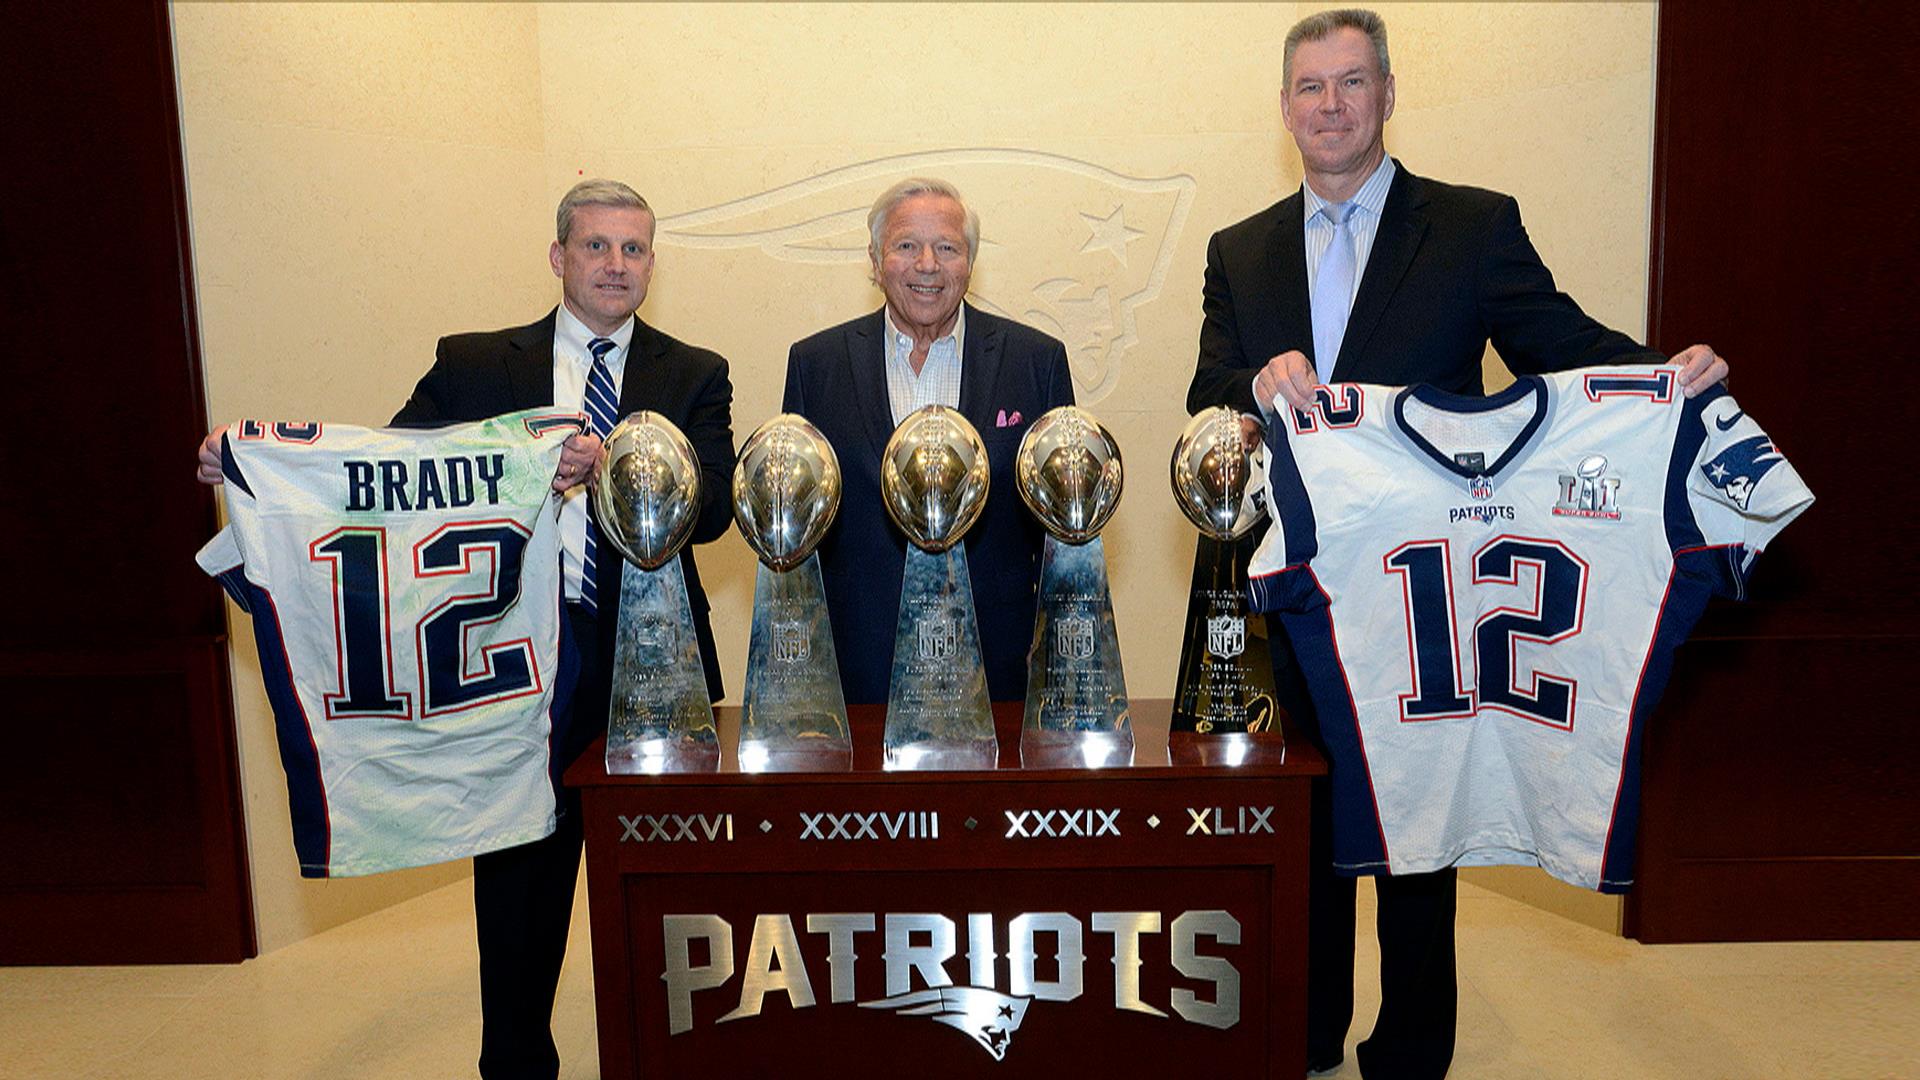 Tom Brady's Stolen Super Bowl Jerseys Returned to Patriots by FBI